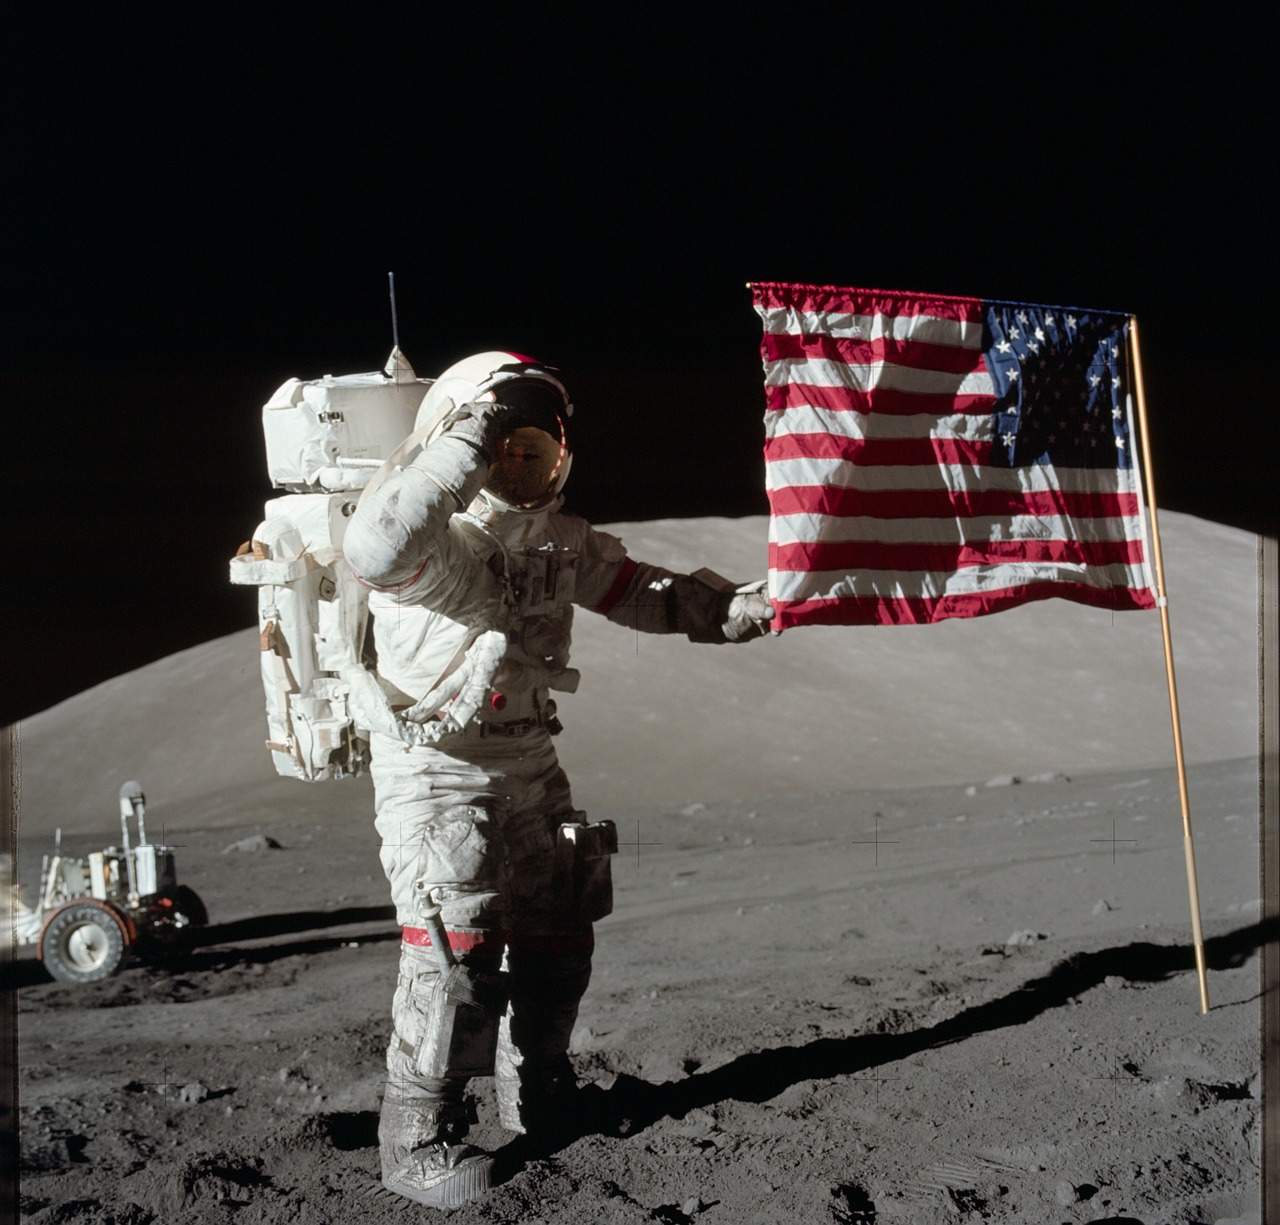 Astronautas, Mėnulis, Vėliava, Usa, Eugene Cernan, Apollo 17, Vadas, Erdvė, Misija, Tyrinėjimas